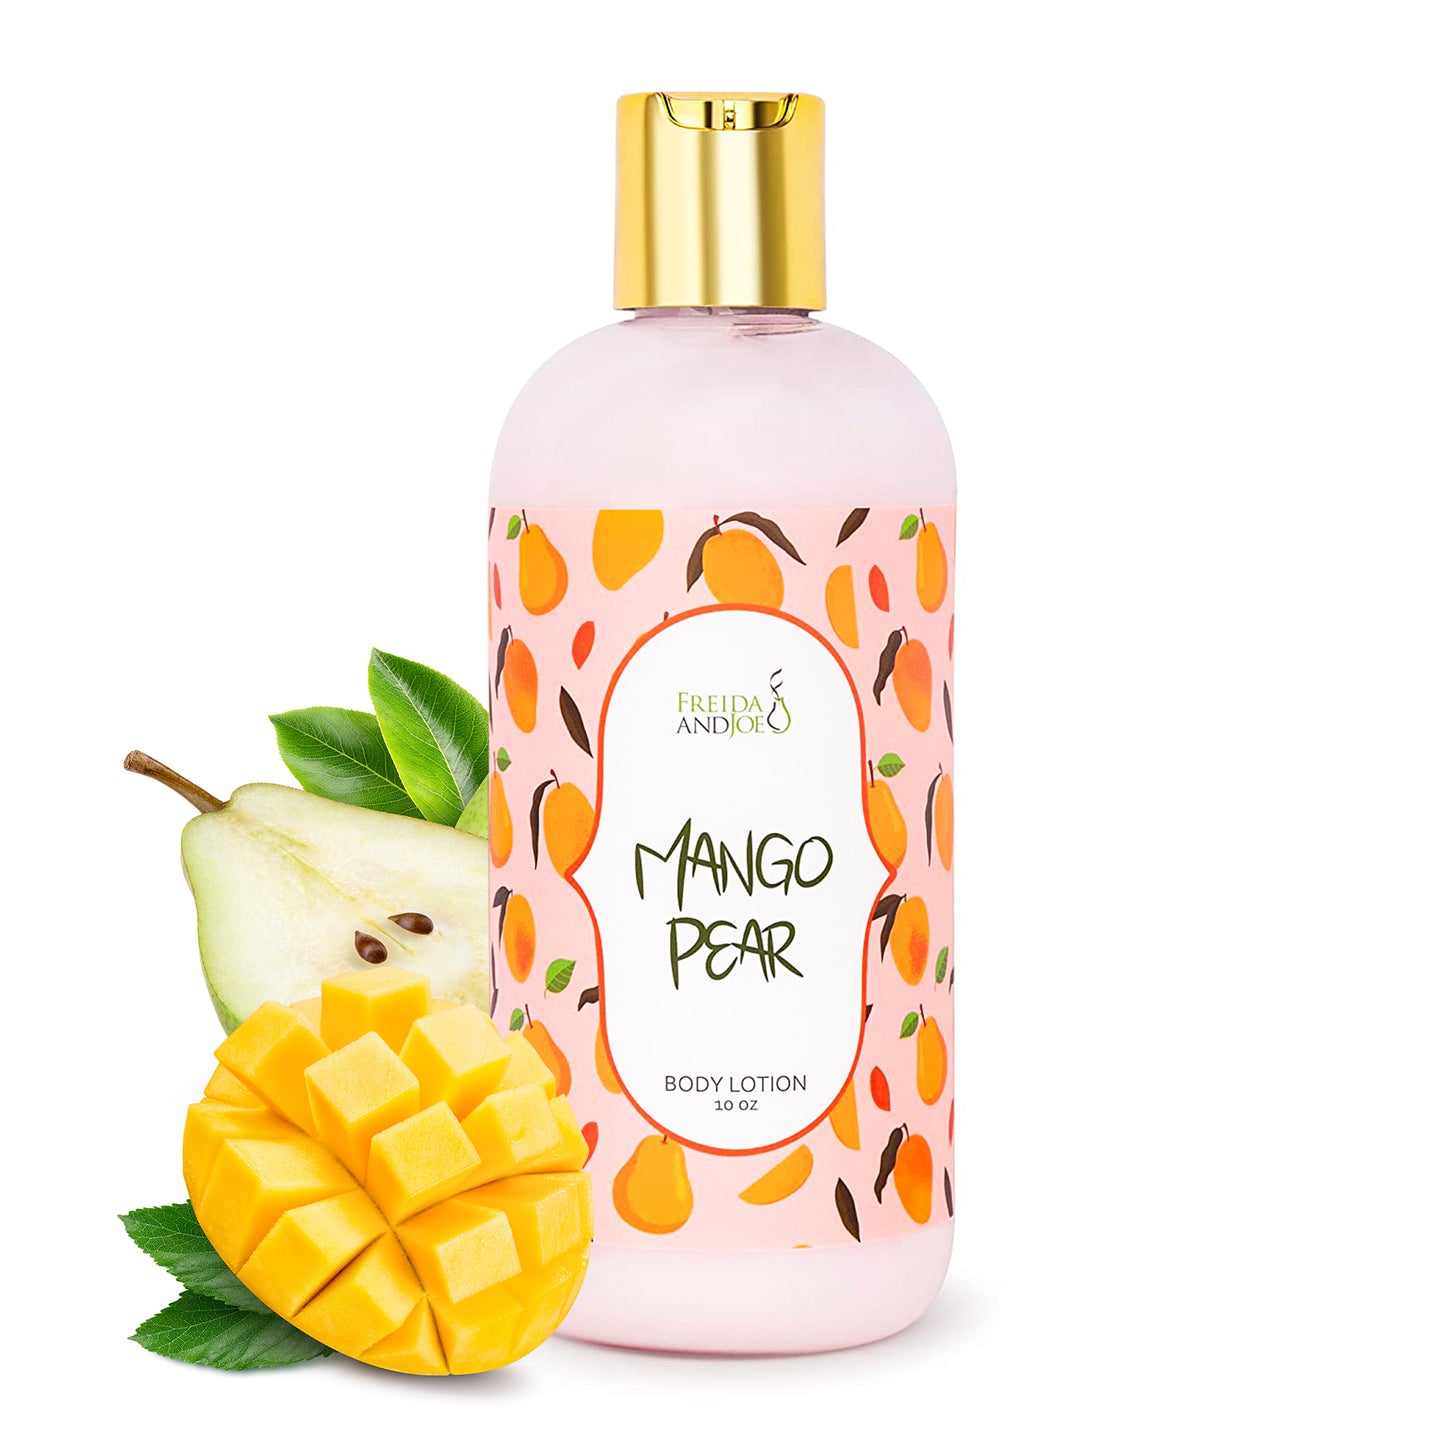 Mango Pear Fragrance Body Lotion in 10oz Bottle